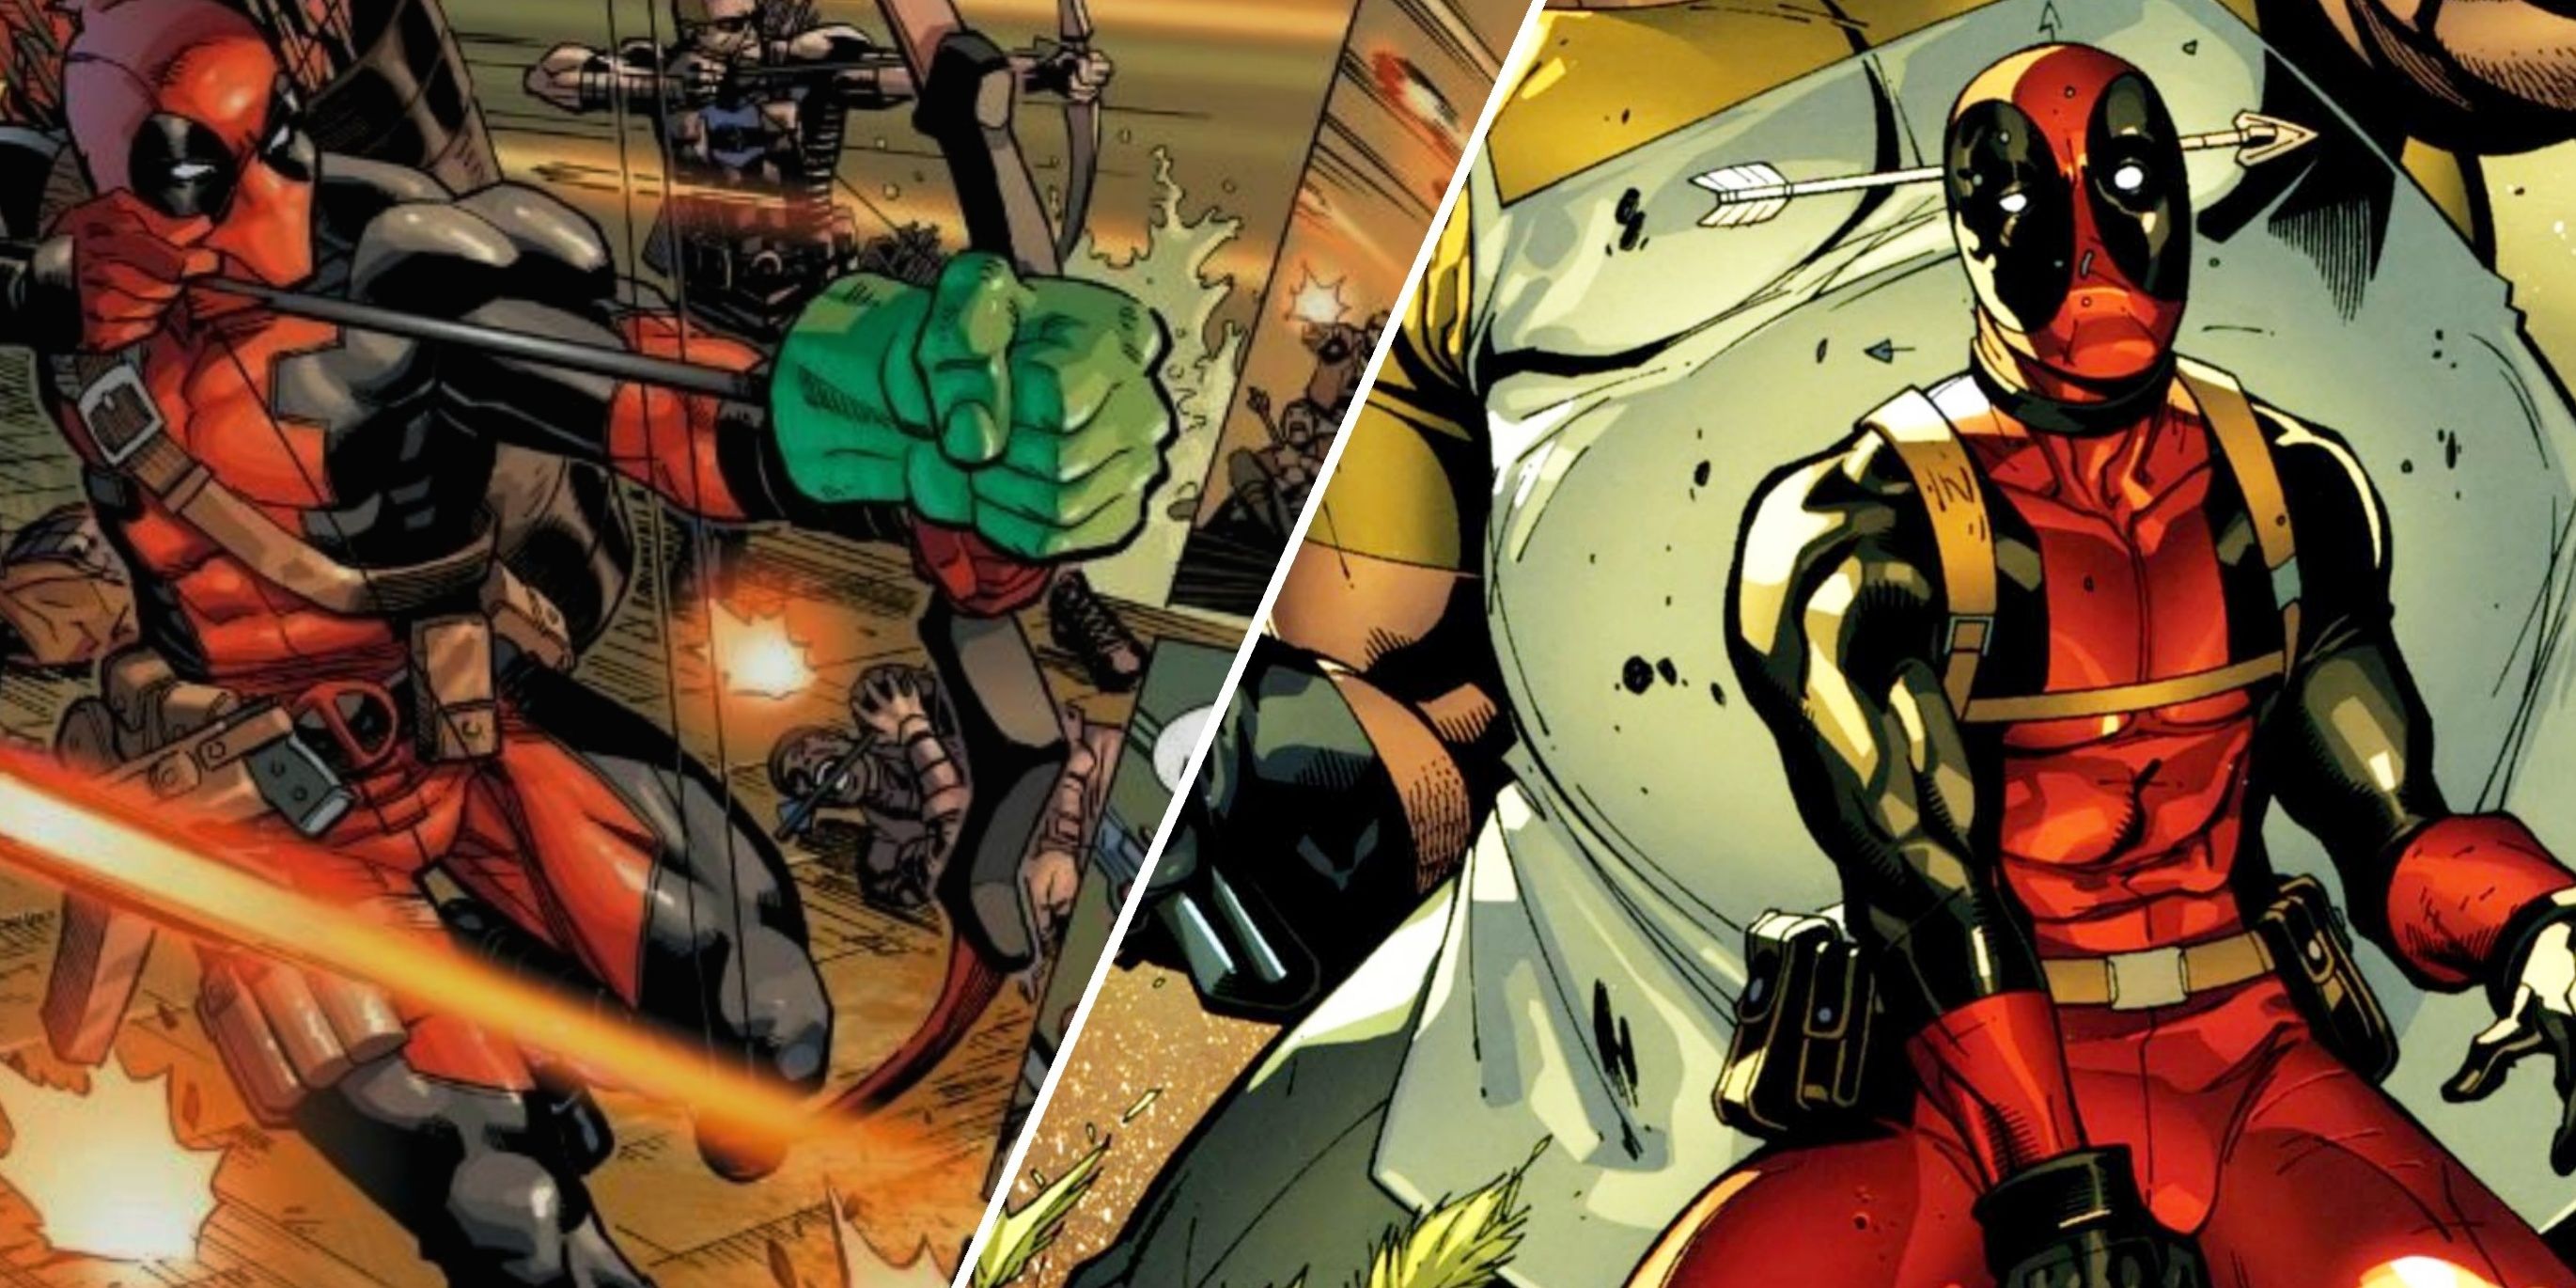 deadpool featured image hulk arrow and superhero pose